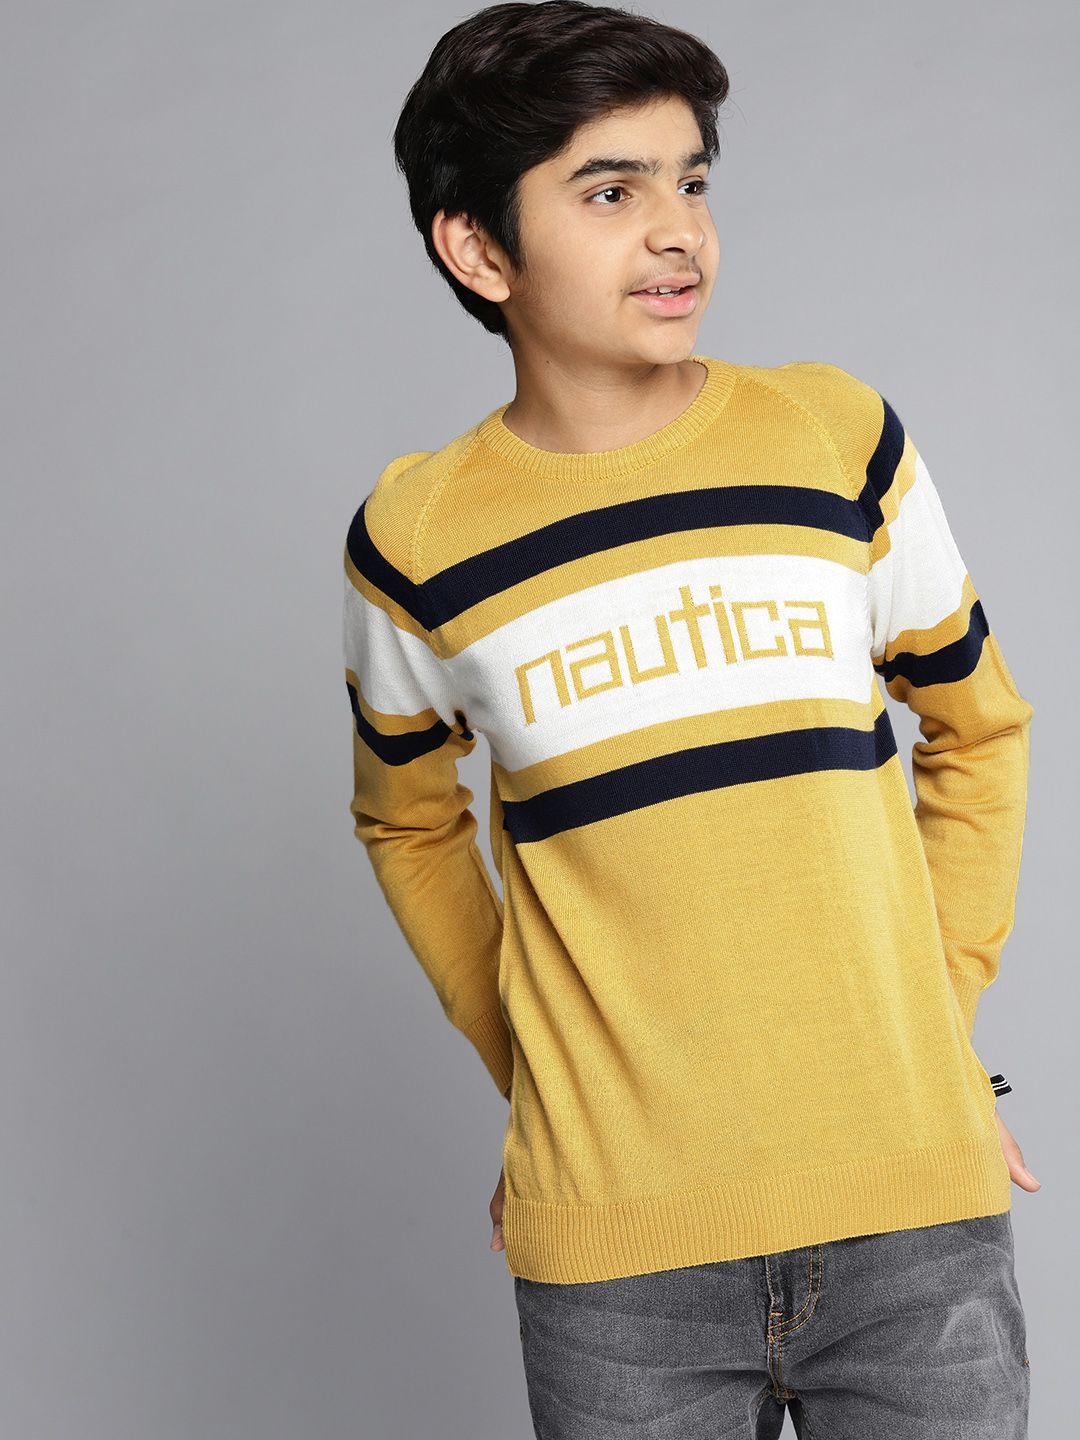 nautica boys yellow & white striped round neck acrylic pullover